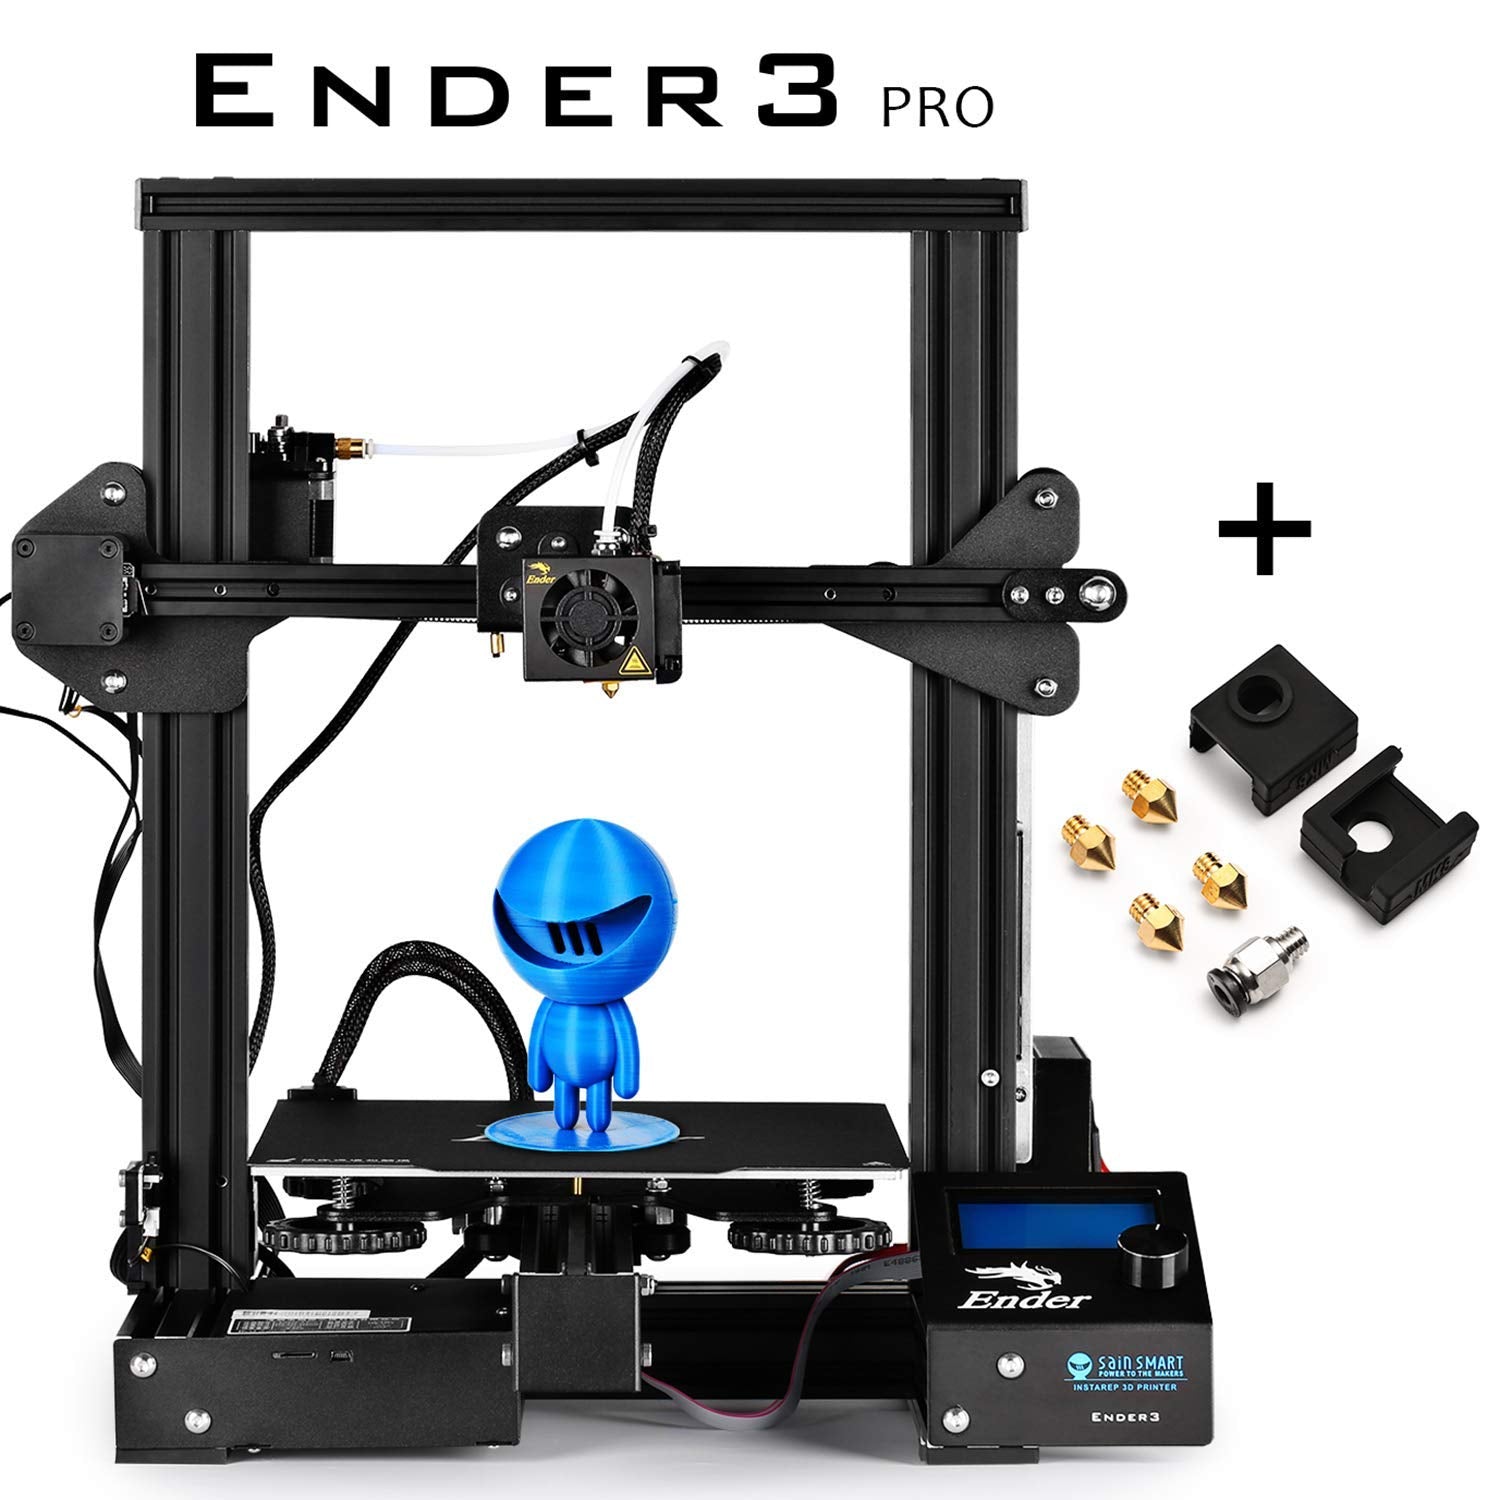 Принтер ender 3 pro. Принтер Creality Ender 3. Creality Ender 3 Pro. 3d принтер Ender 3 Pro. 3d принтер Creality Ender 3 s1.